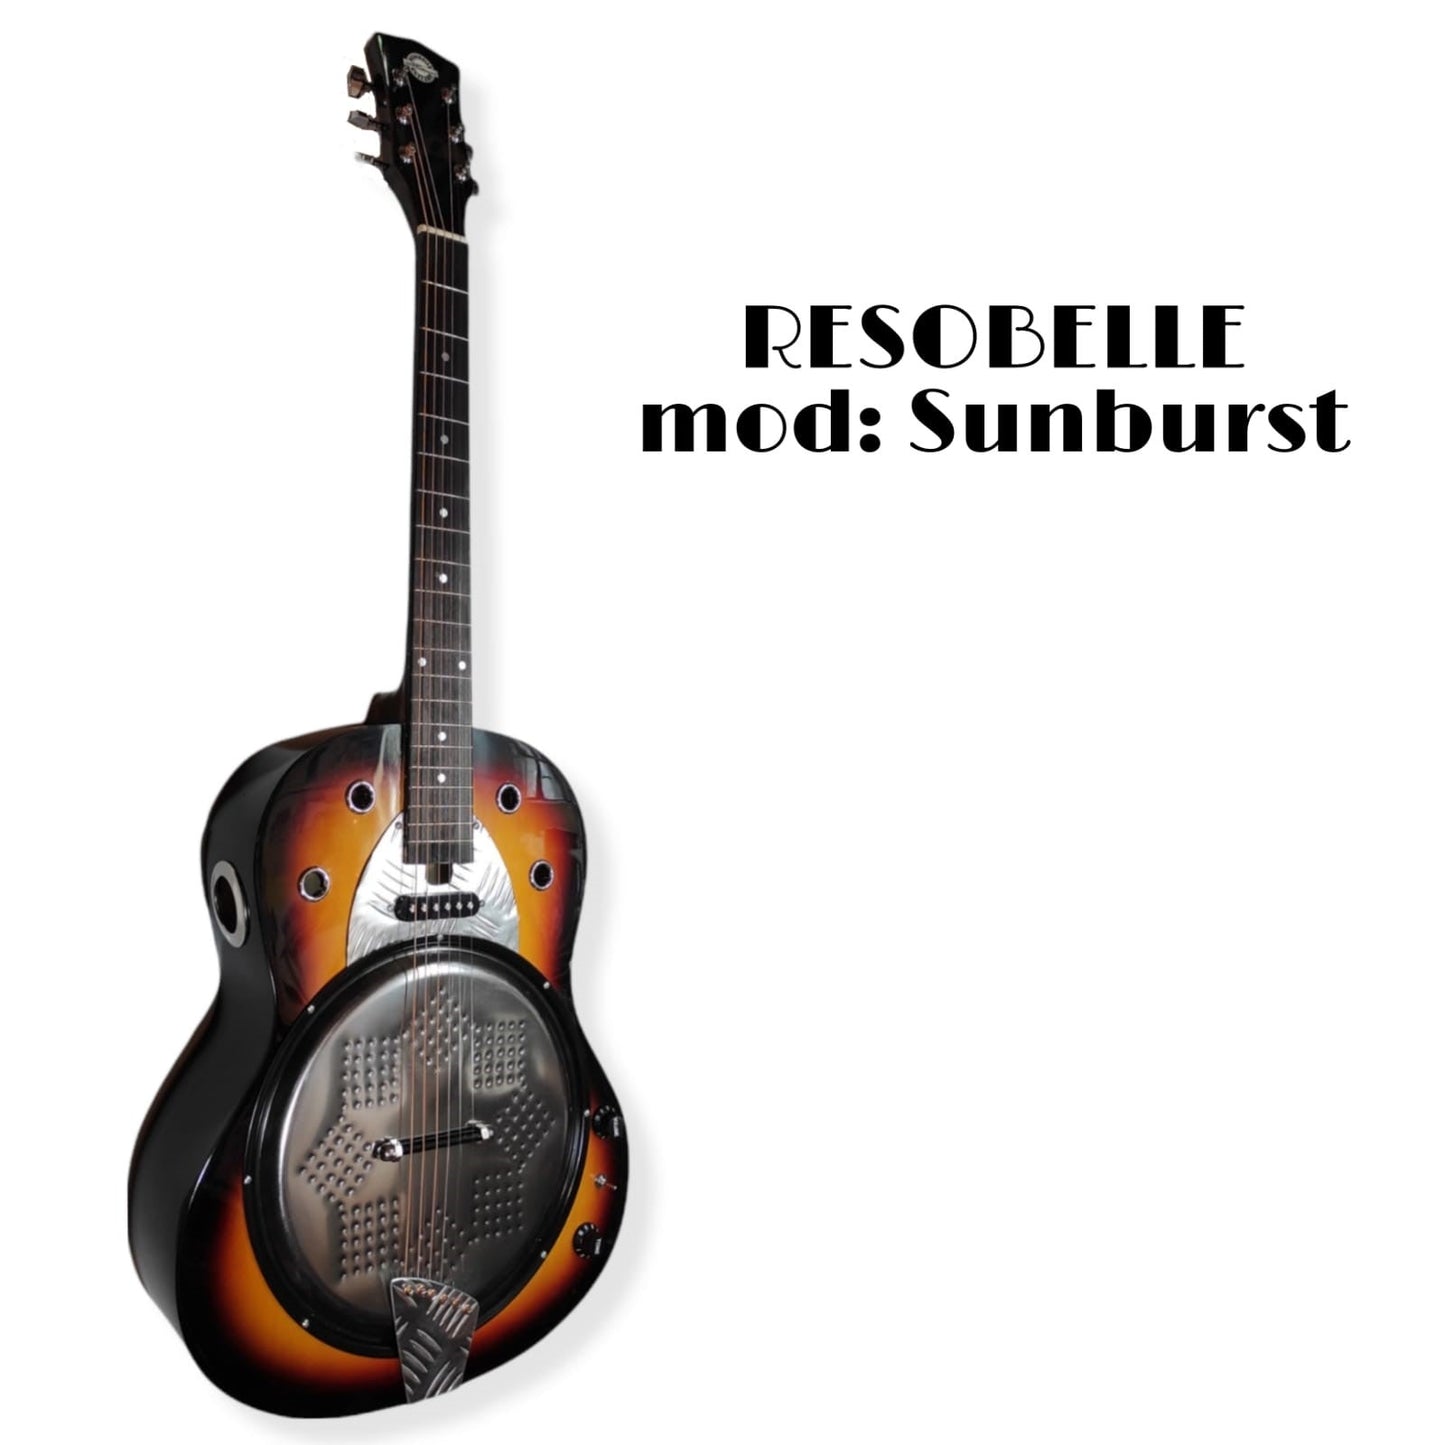 Resobelle  Sunburst acustic guitar